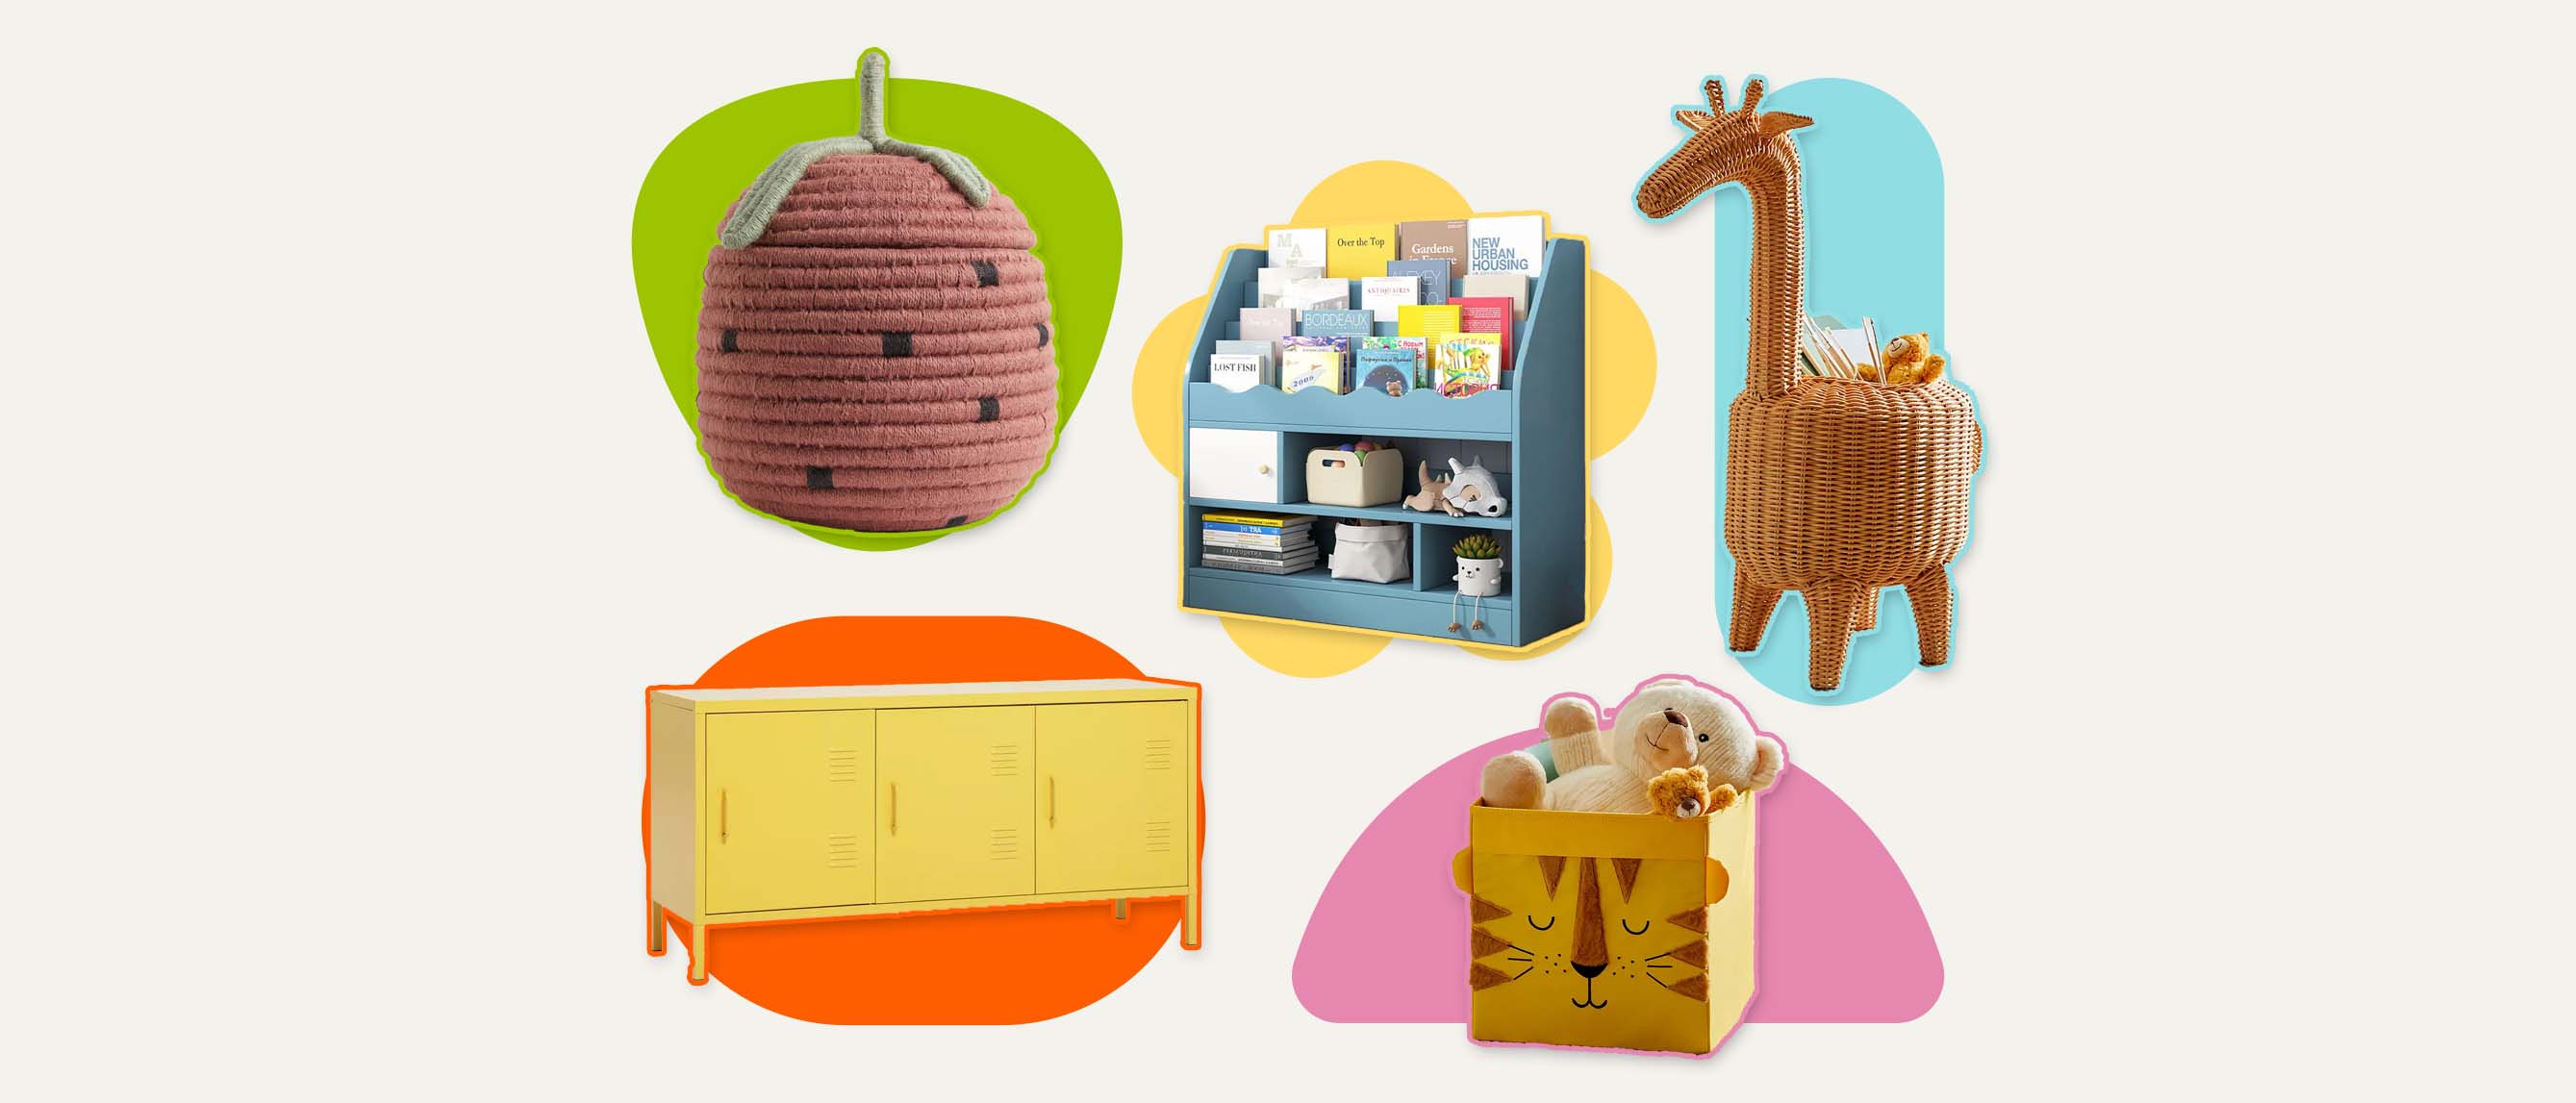 Safari Animal Furniture Knobs, Animal Knobs, Children's Animal Drawer Knobs,  Safari Animal Bedroom, Nursery Storage, Tiger Knob, Elephant -  UK